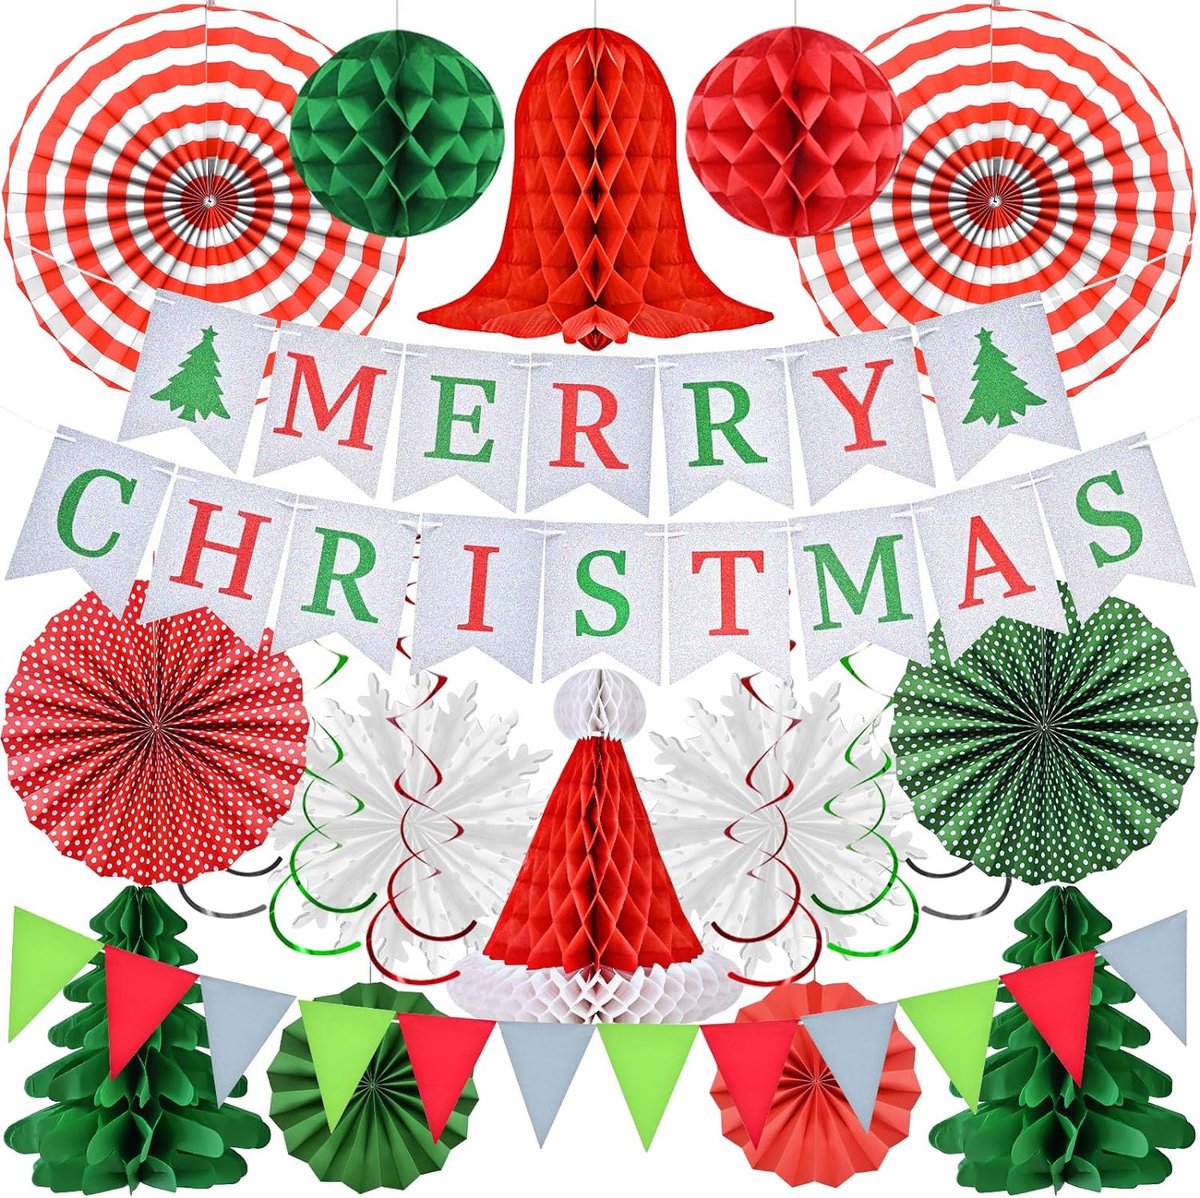 Kerstfeestdecoratieset – 12 stuks voor binnen en tafel, Merry Christmas Party Banner Deco, slinger, kerstboom, kerstmuts, sneeuwbal, sneeuwvlokken, bel, gekleurd lint